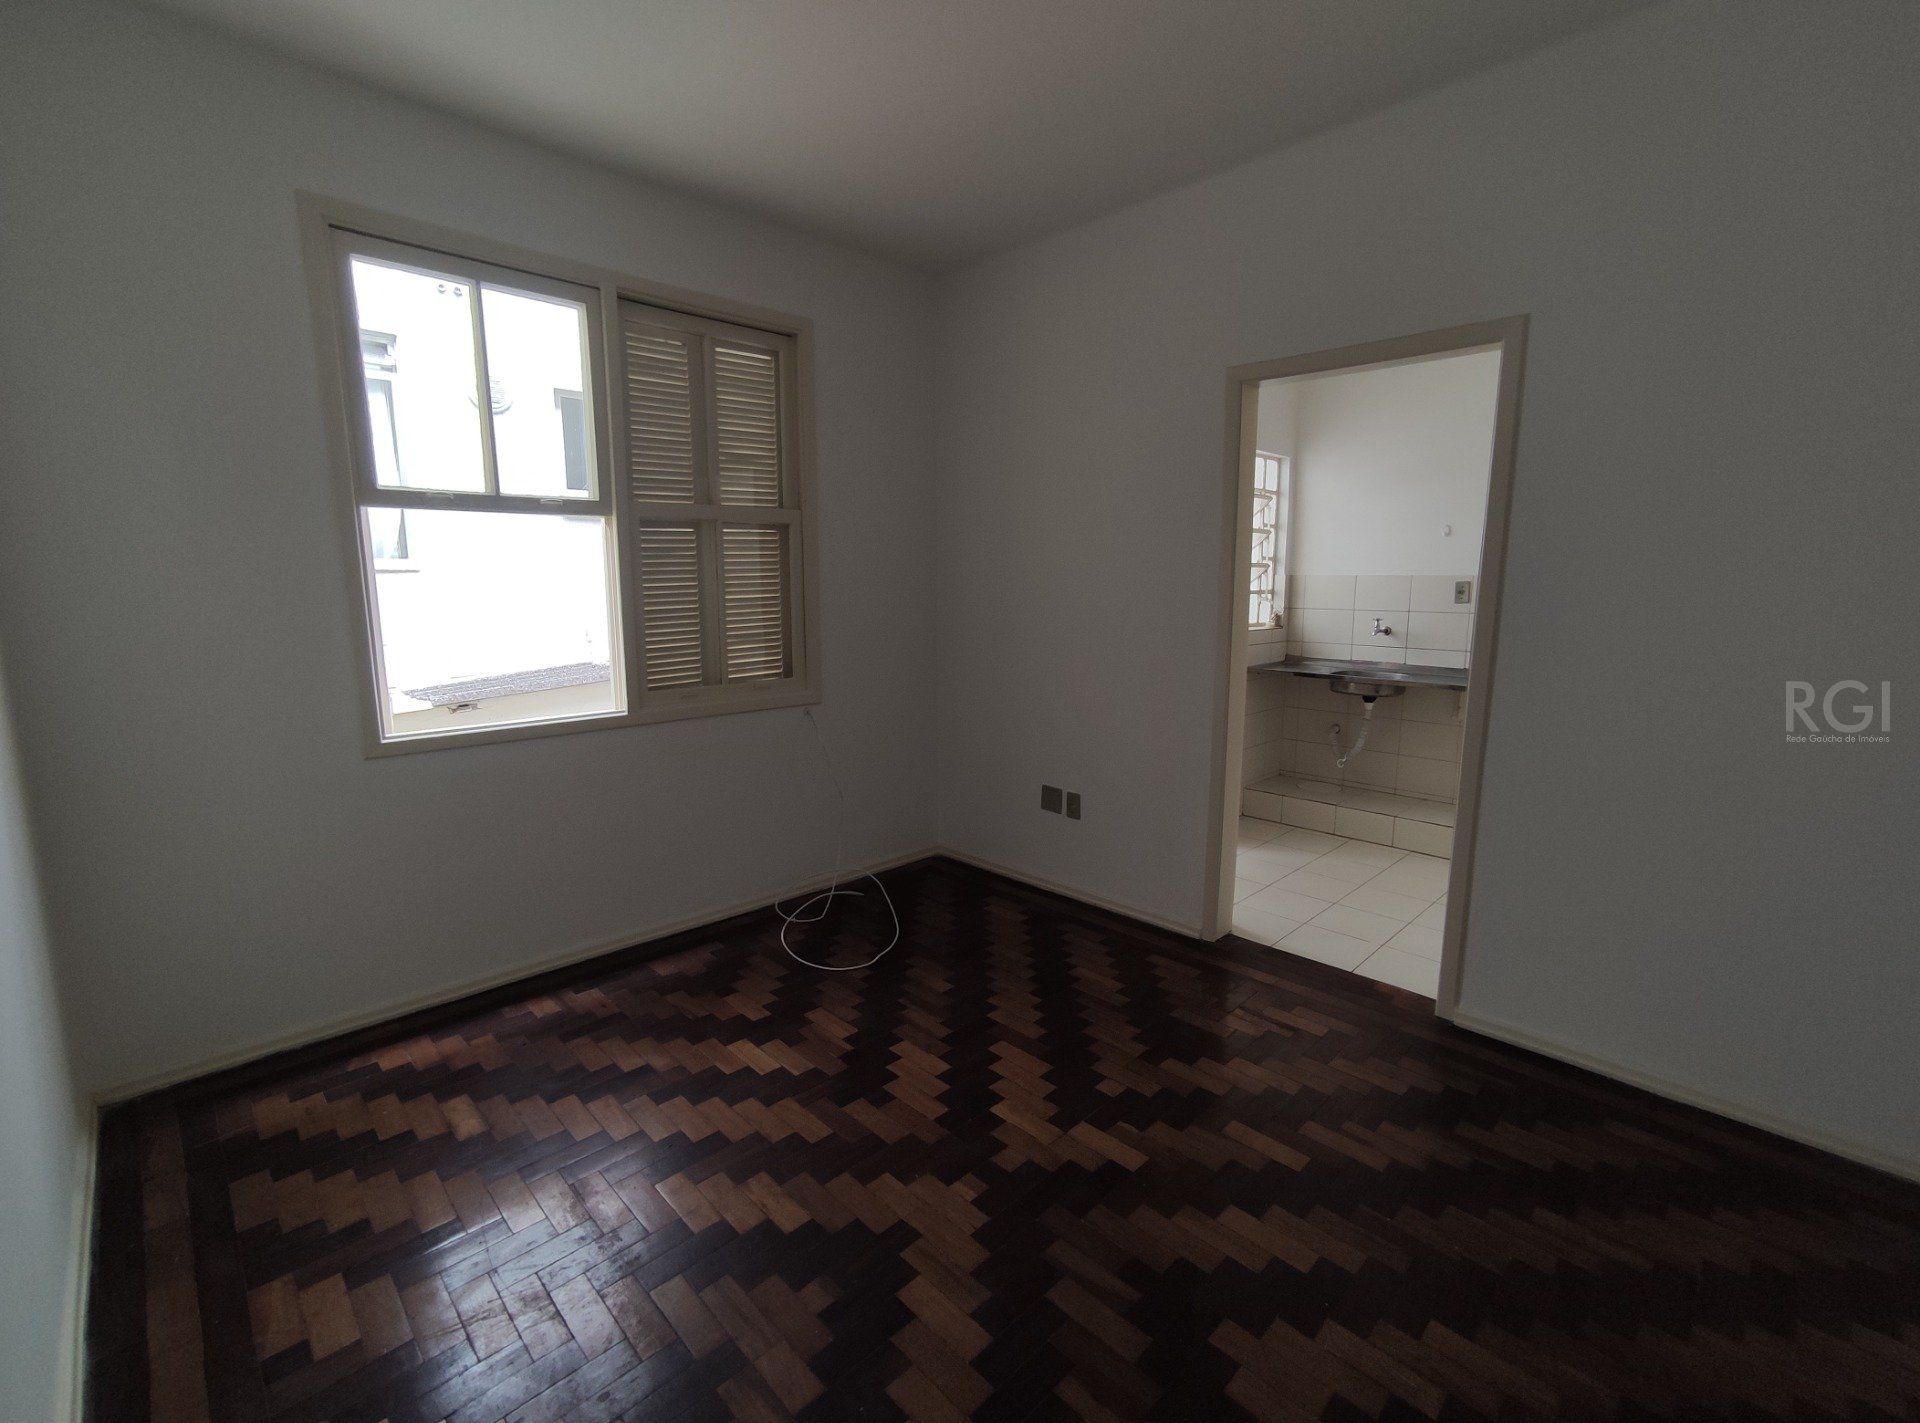 Apartamento com 40m², 1 dormitório no bairro Menino Deus em Porto Alegre para Comprar